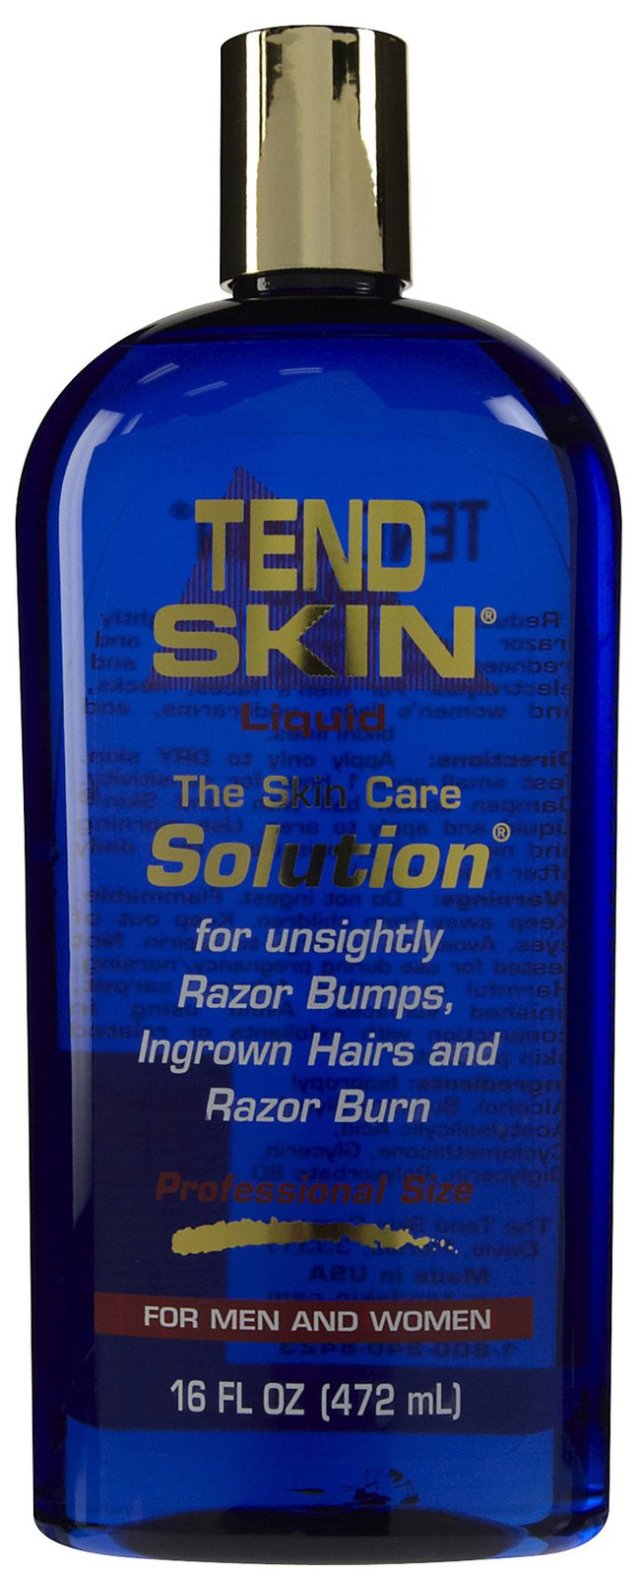 Tend Skin Liquid Review